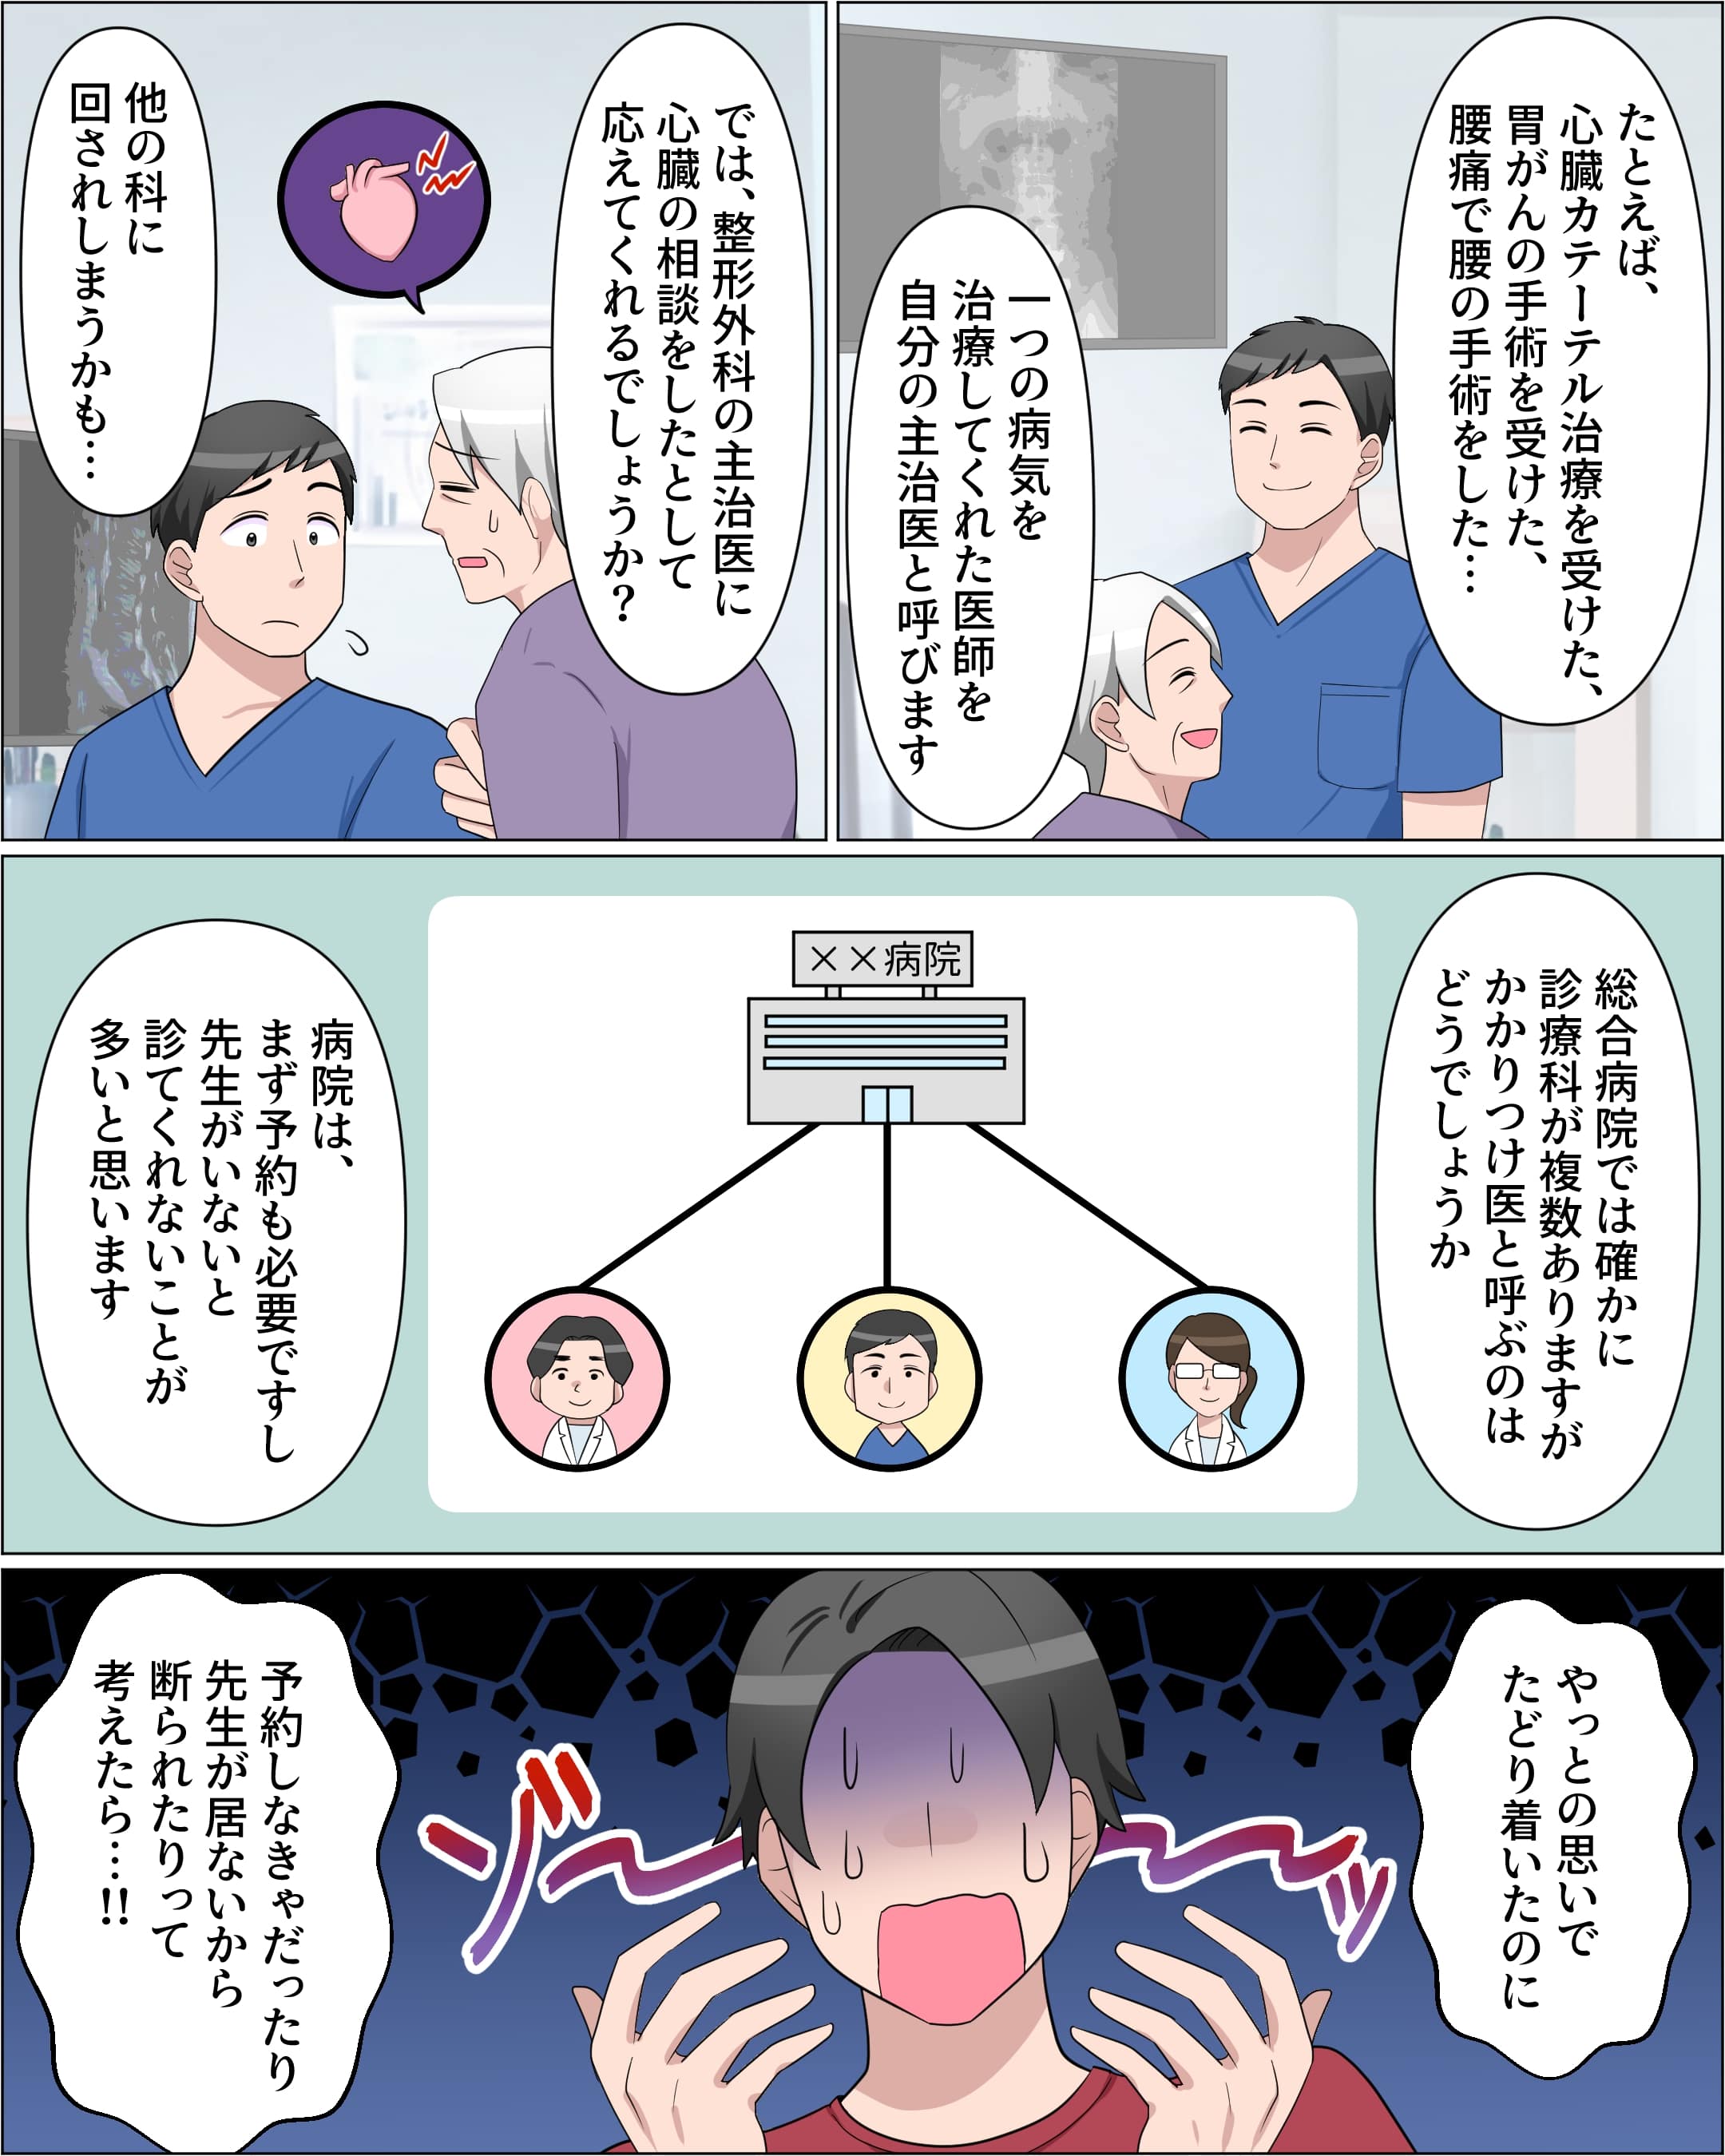 高齢者社会になる日本-5